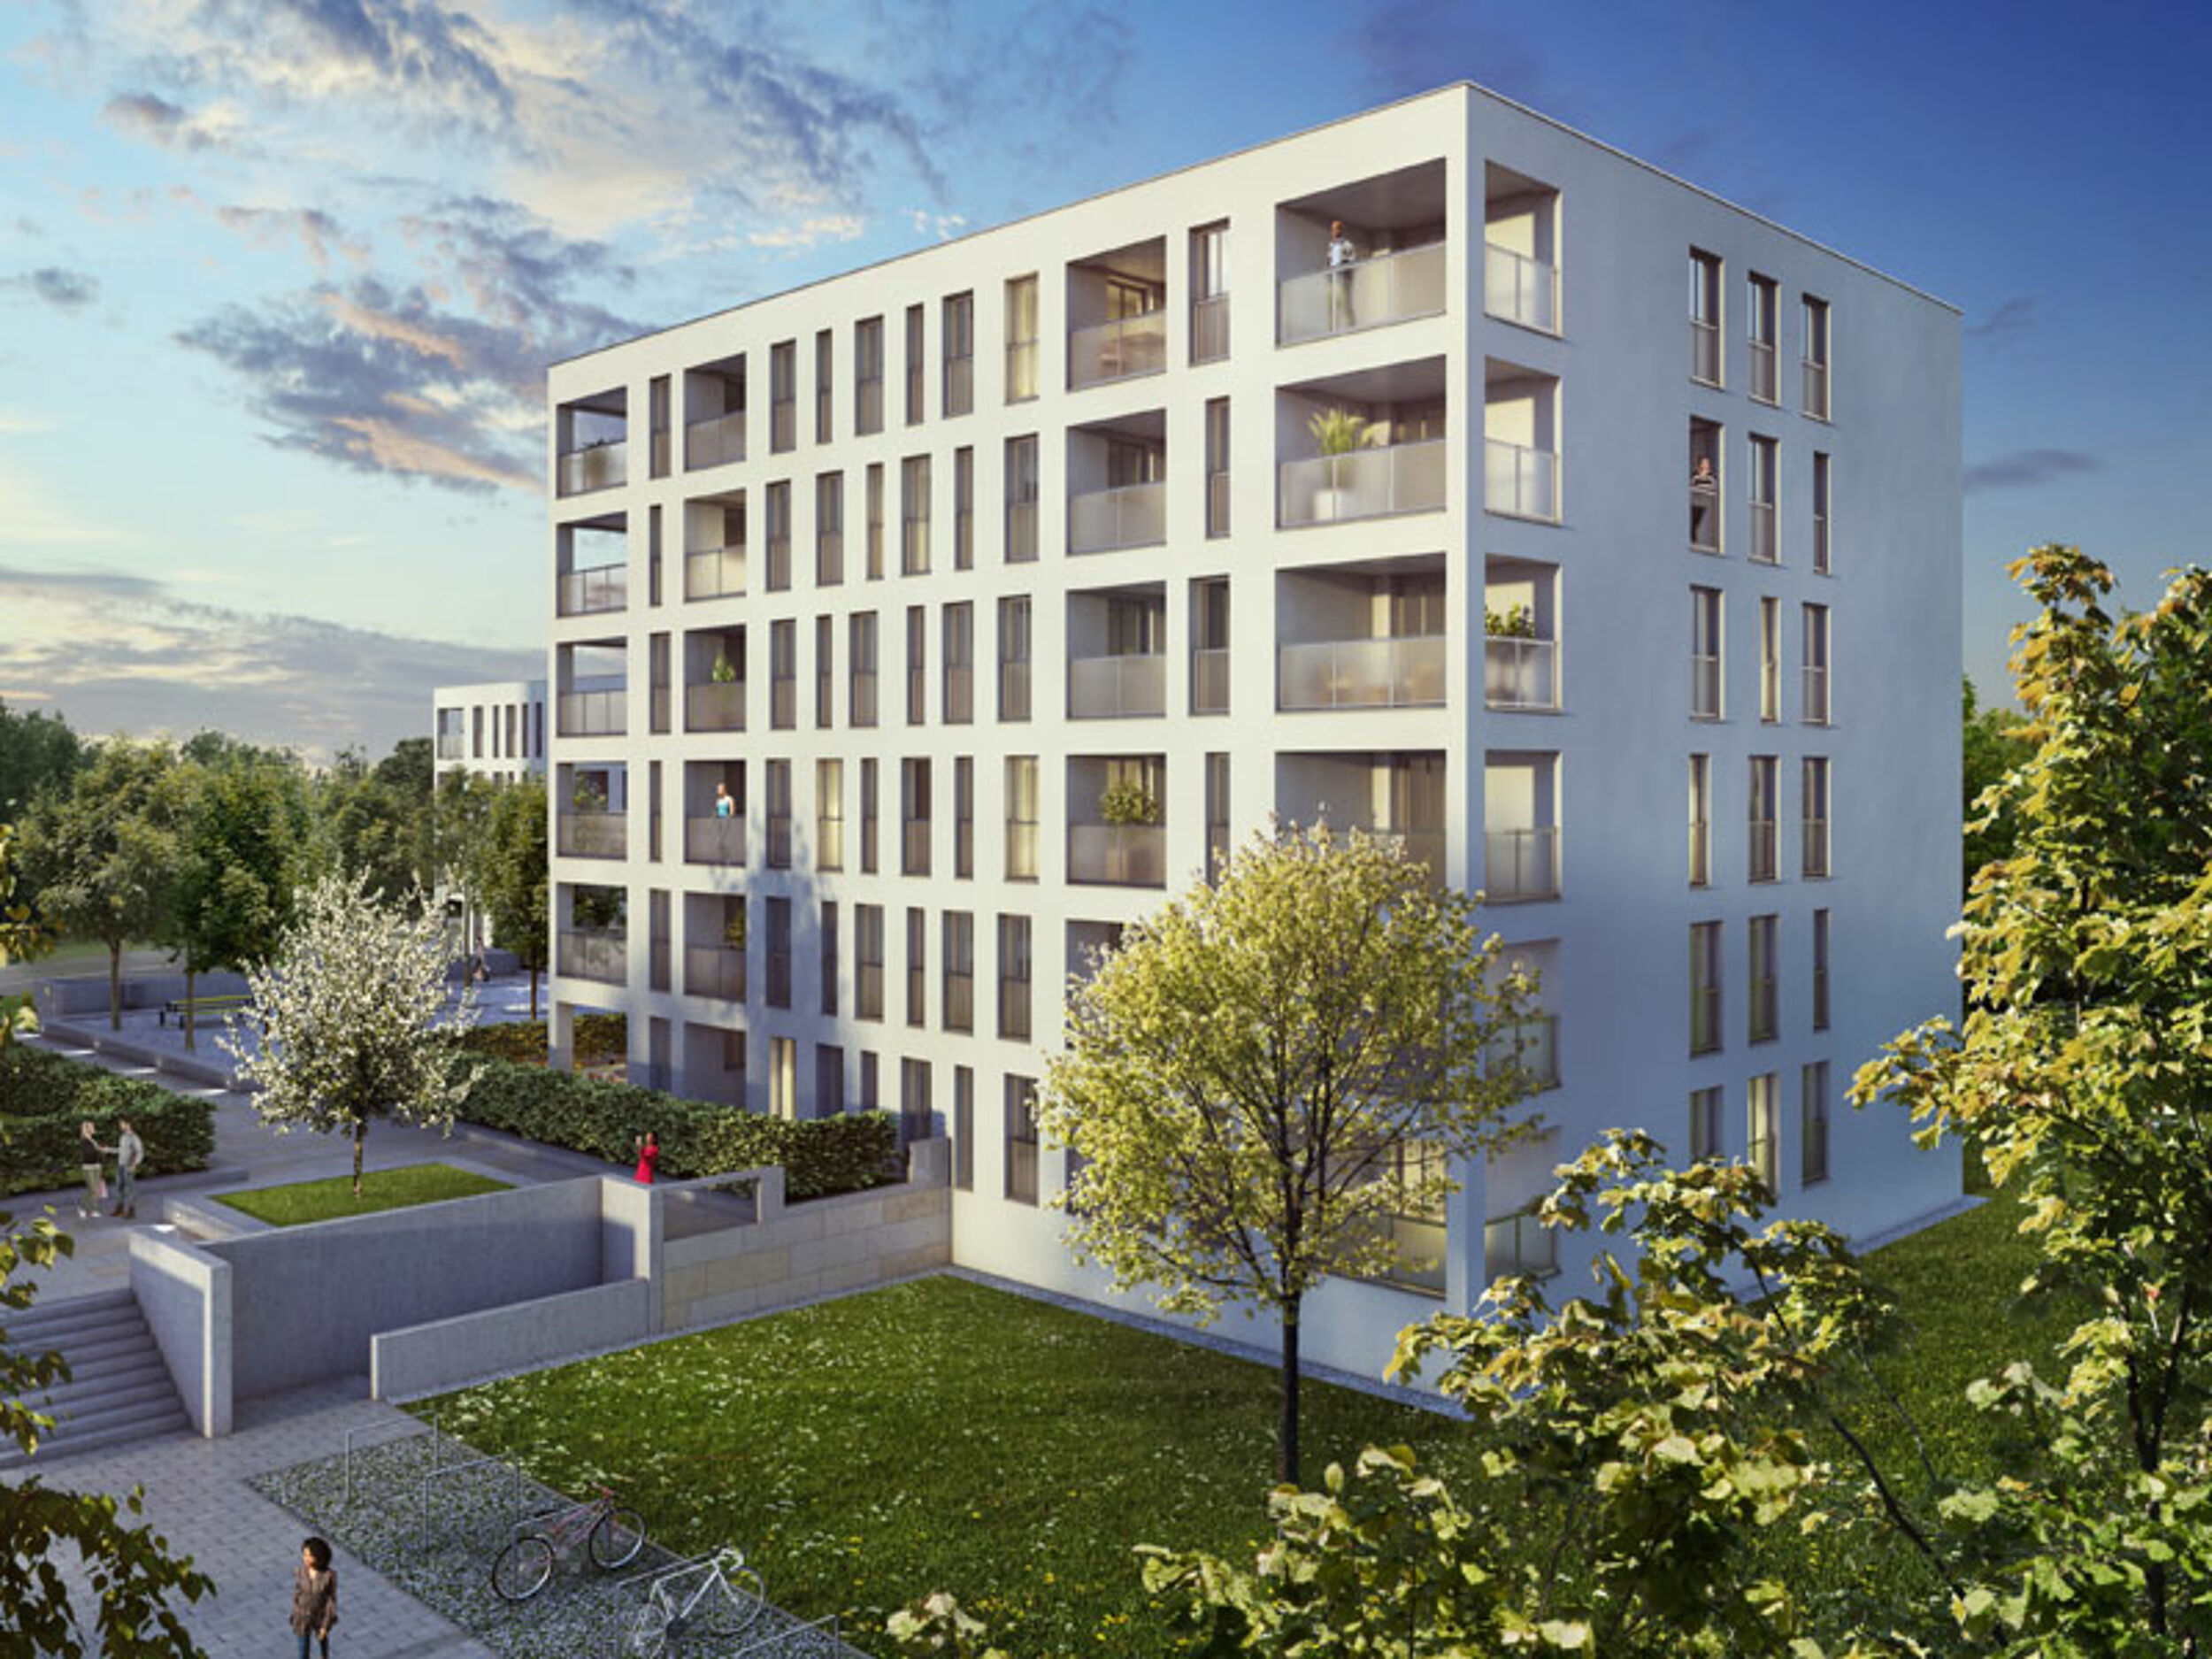 HI-Wohnbau Verkaufsstart von „PLAZA“ in München-Allach